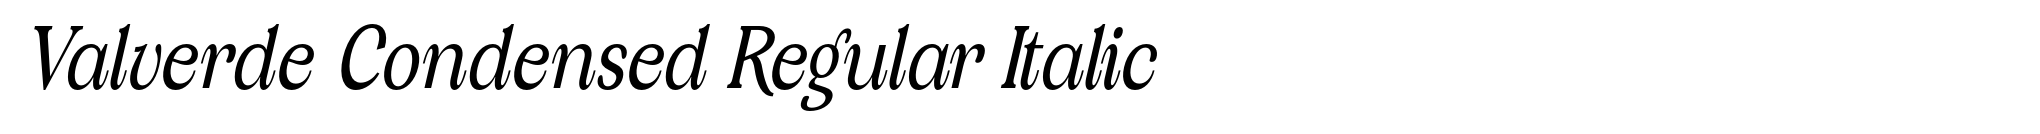 Valverde Condensed Regular Italic image